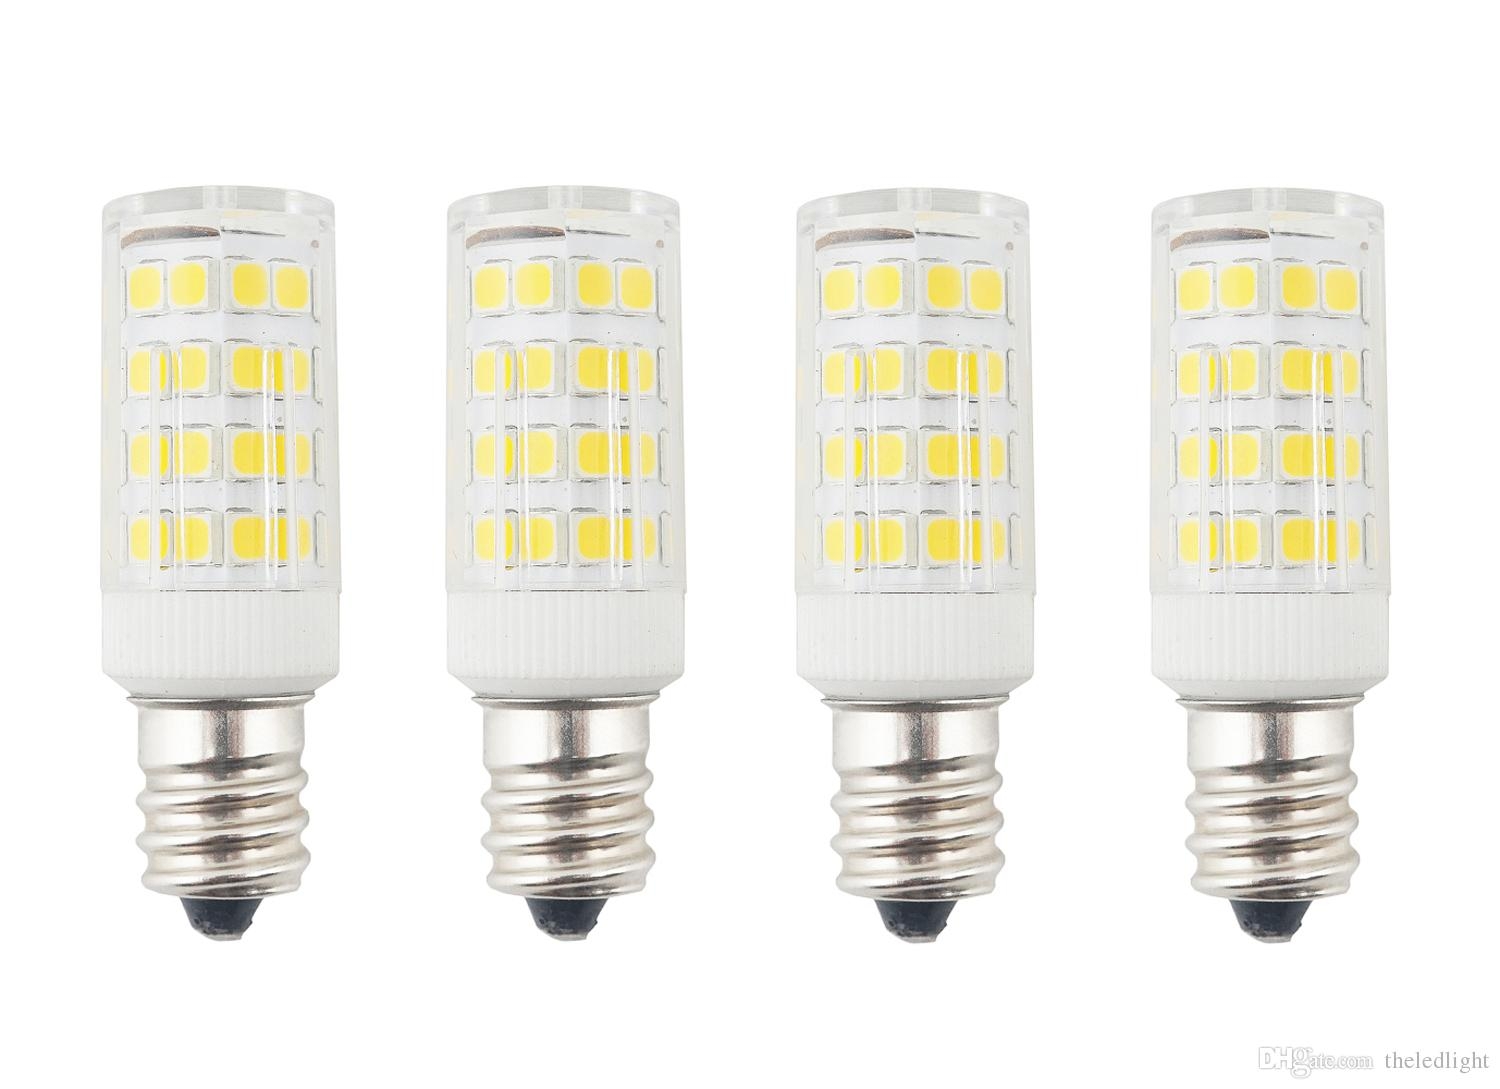 Light Bulbs For Ceiling Fans